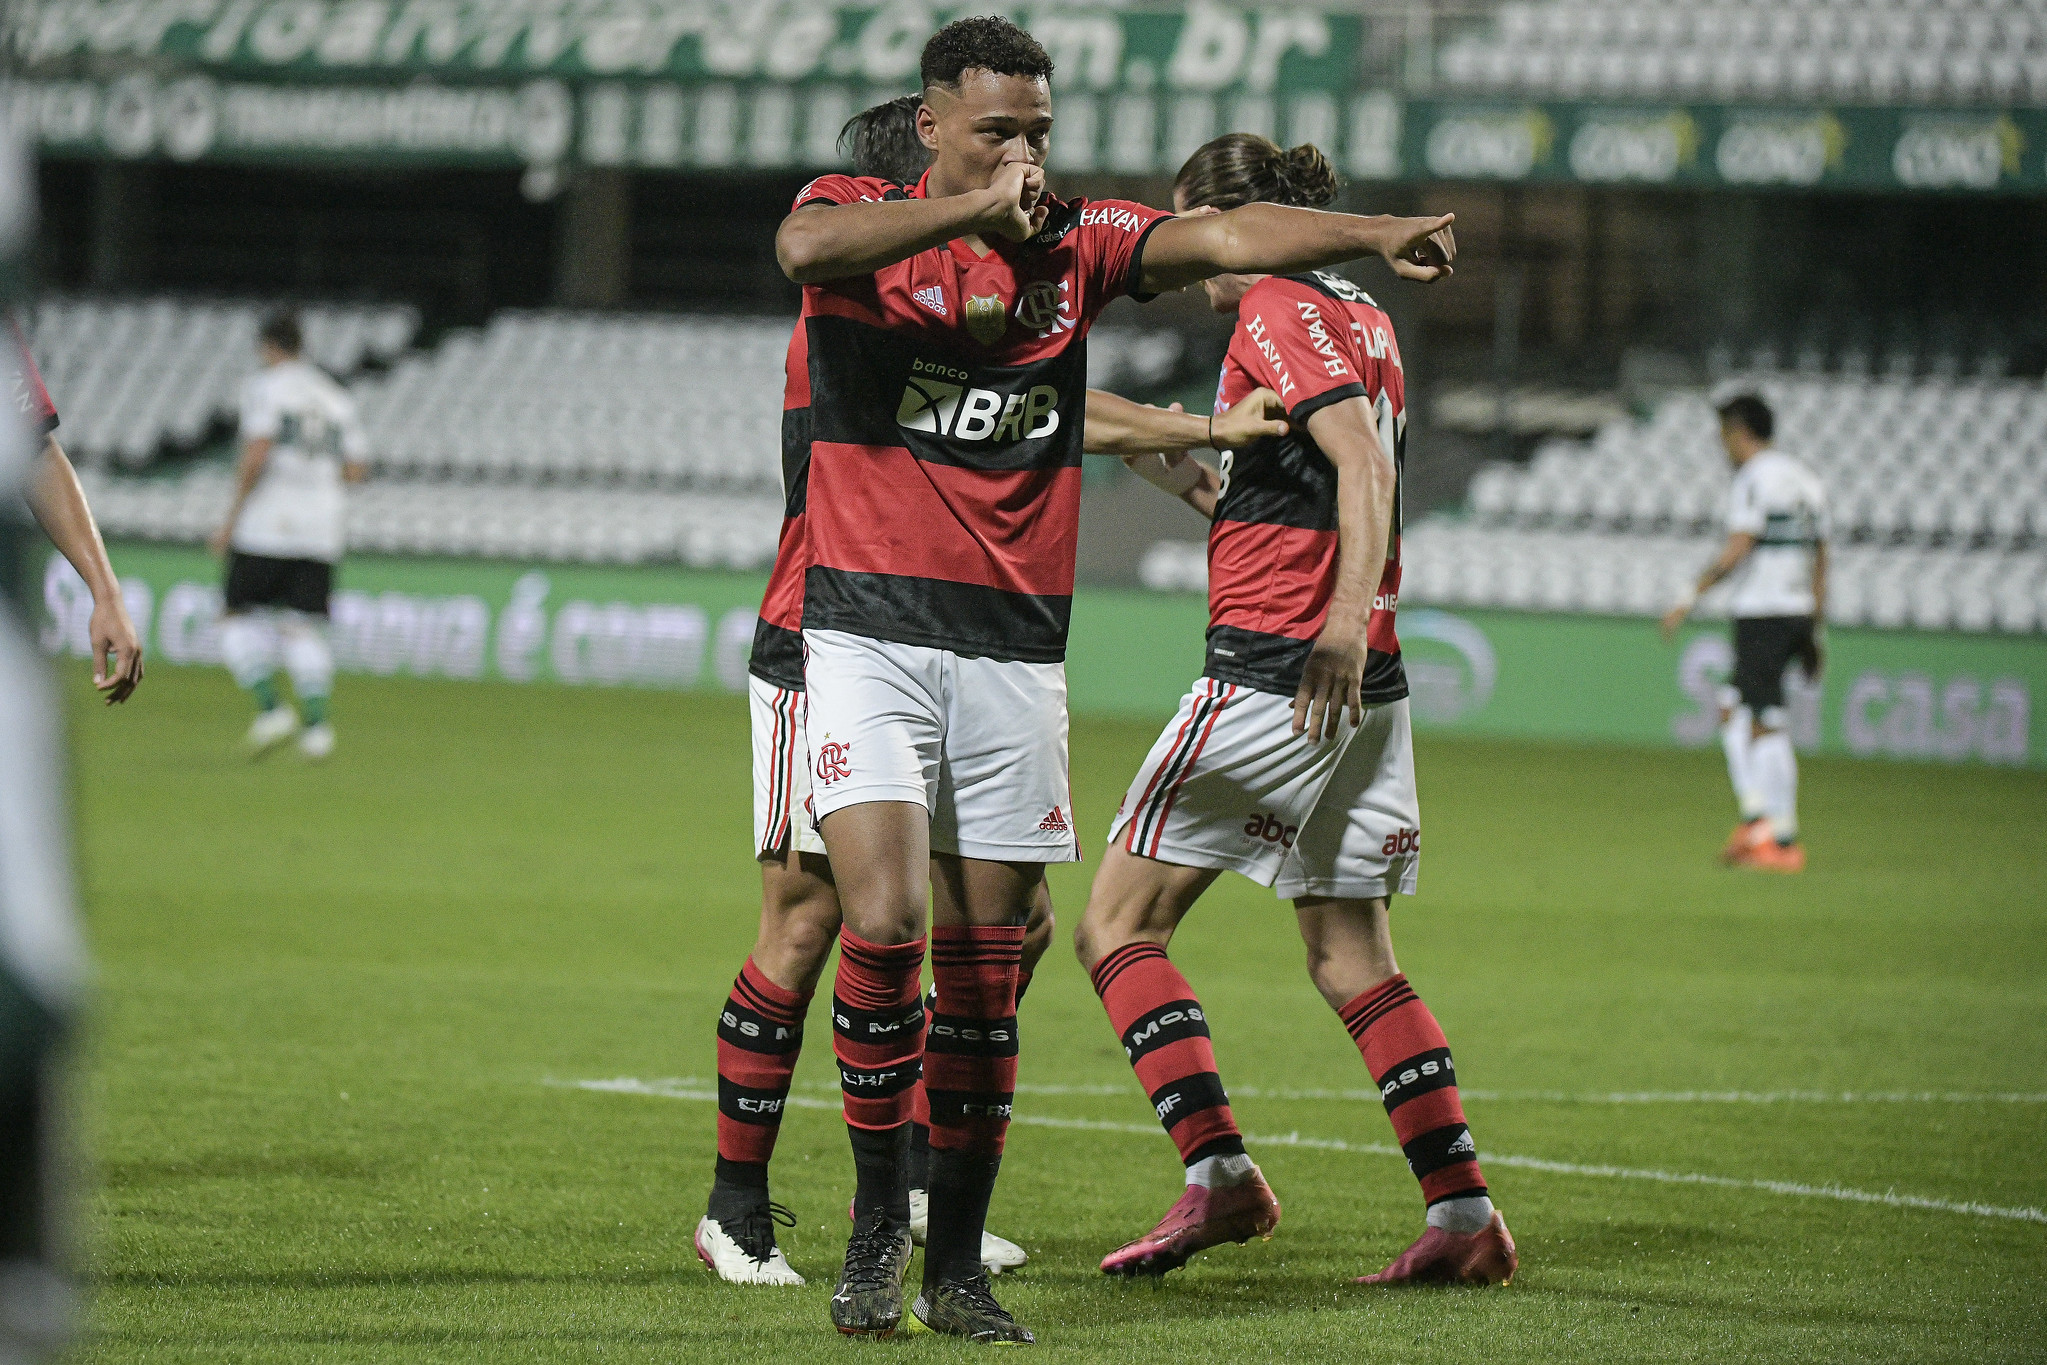 Flamengo fecha com Mauricio Isla, jogador inicia exames médicos e agiliza  voo para o Brasil, Flamengo